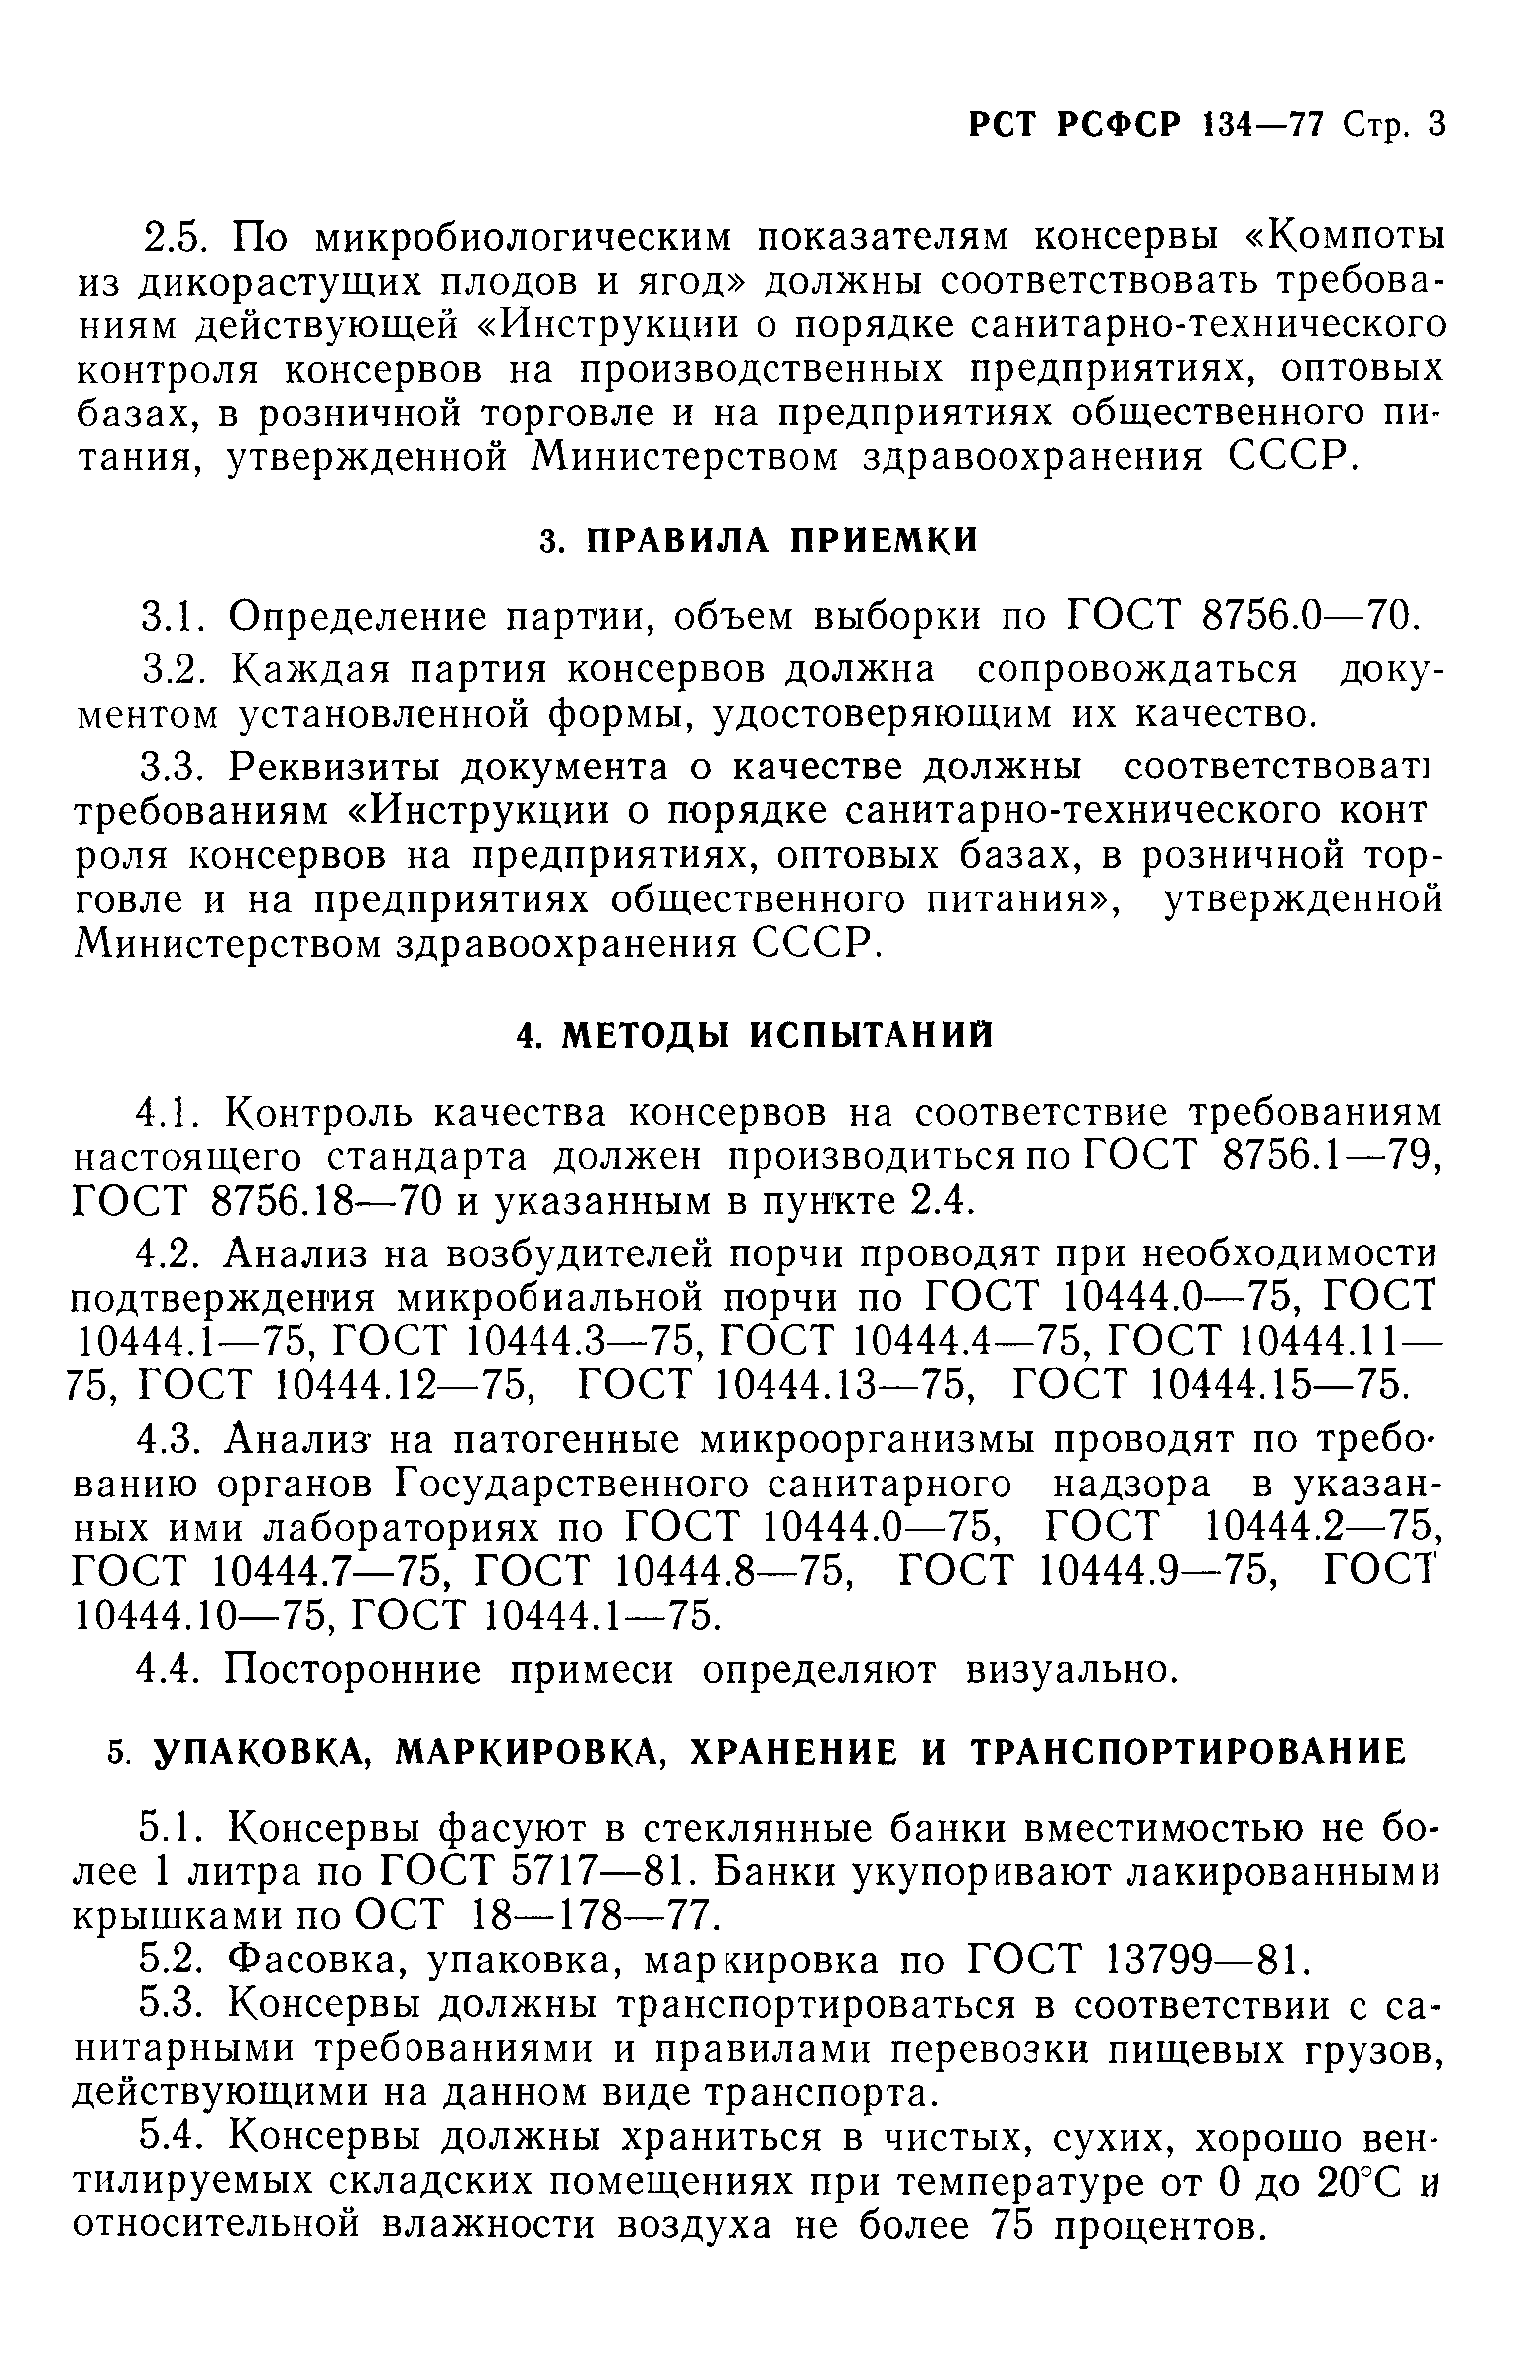 РСТ РСФСР 134-77